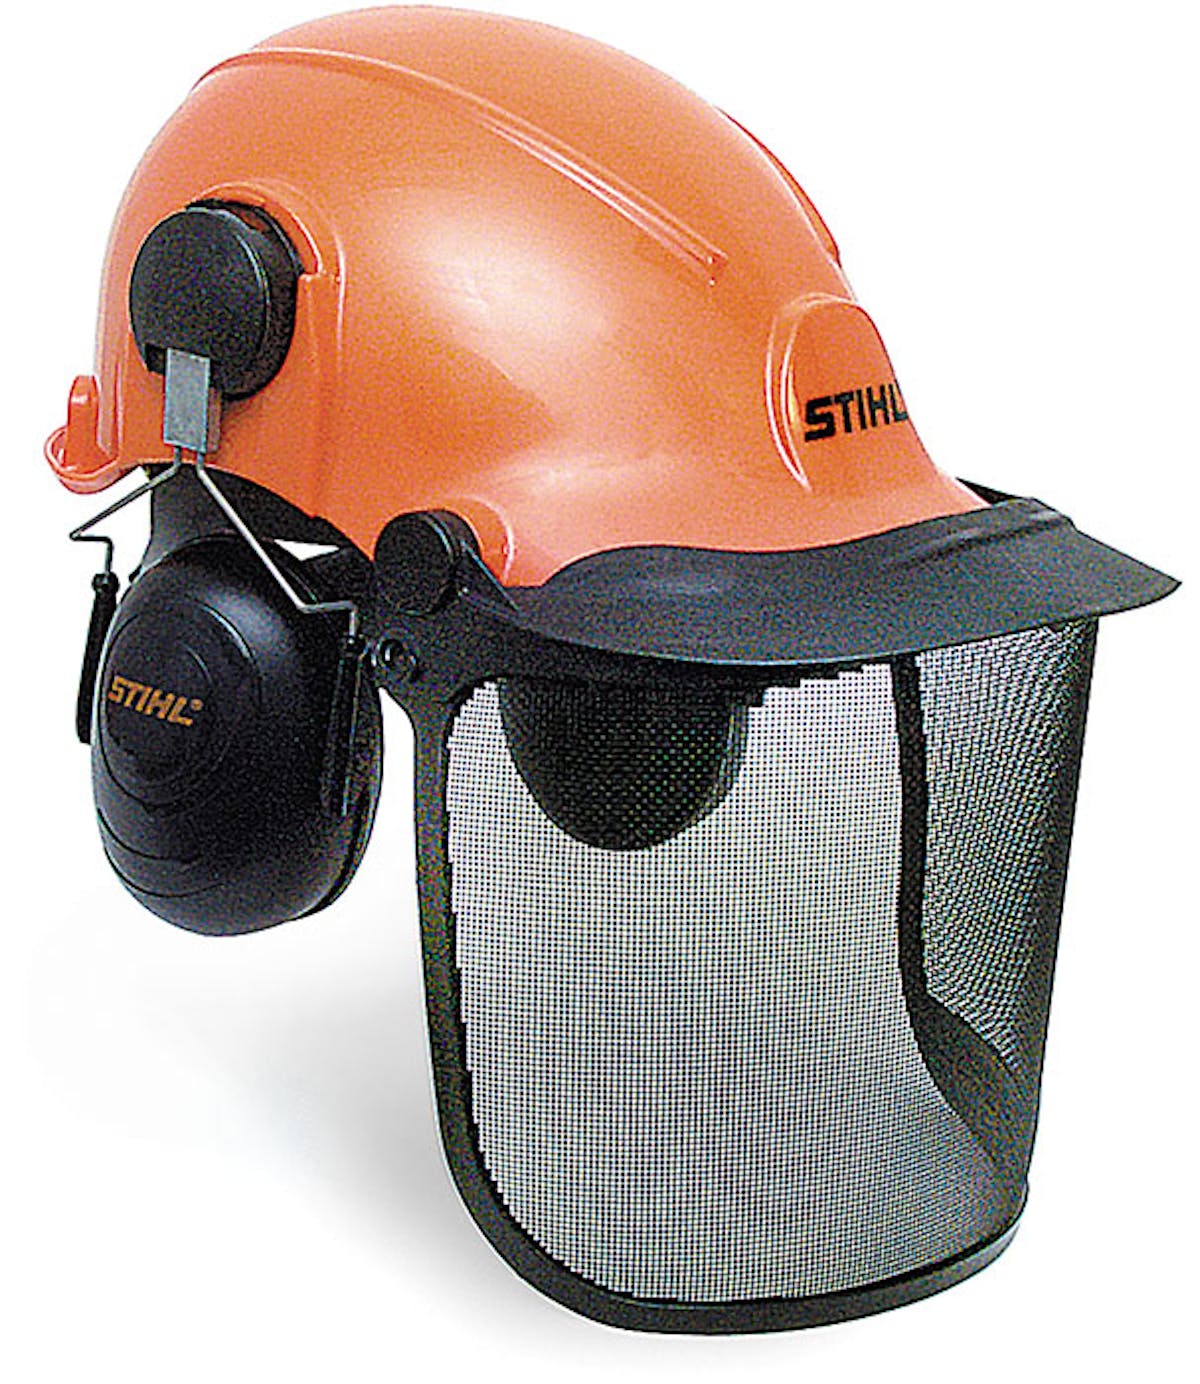 林業頭盔系統